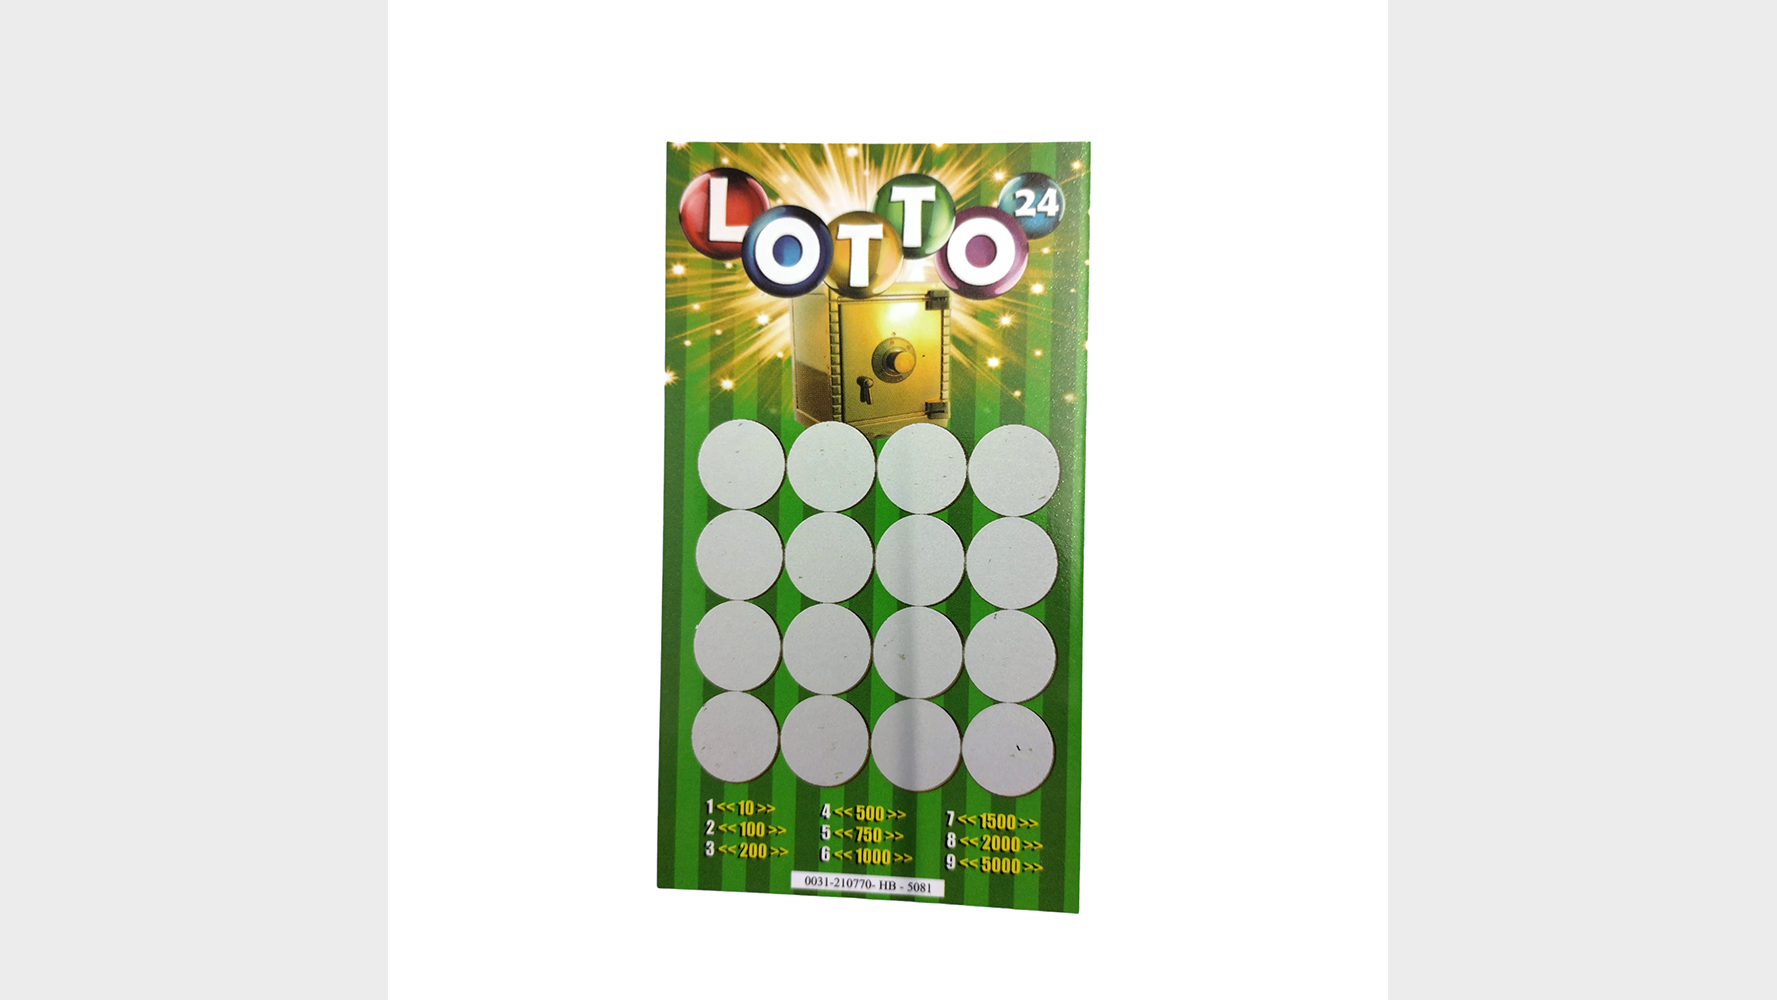 Lotto Vorhersage | Lotto 24 Deinparadies.ch bei Deinparadies.ch